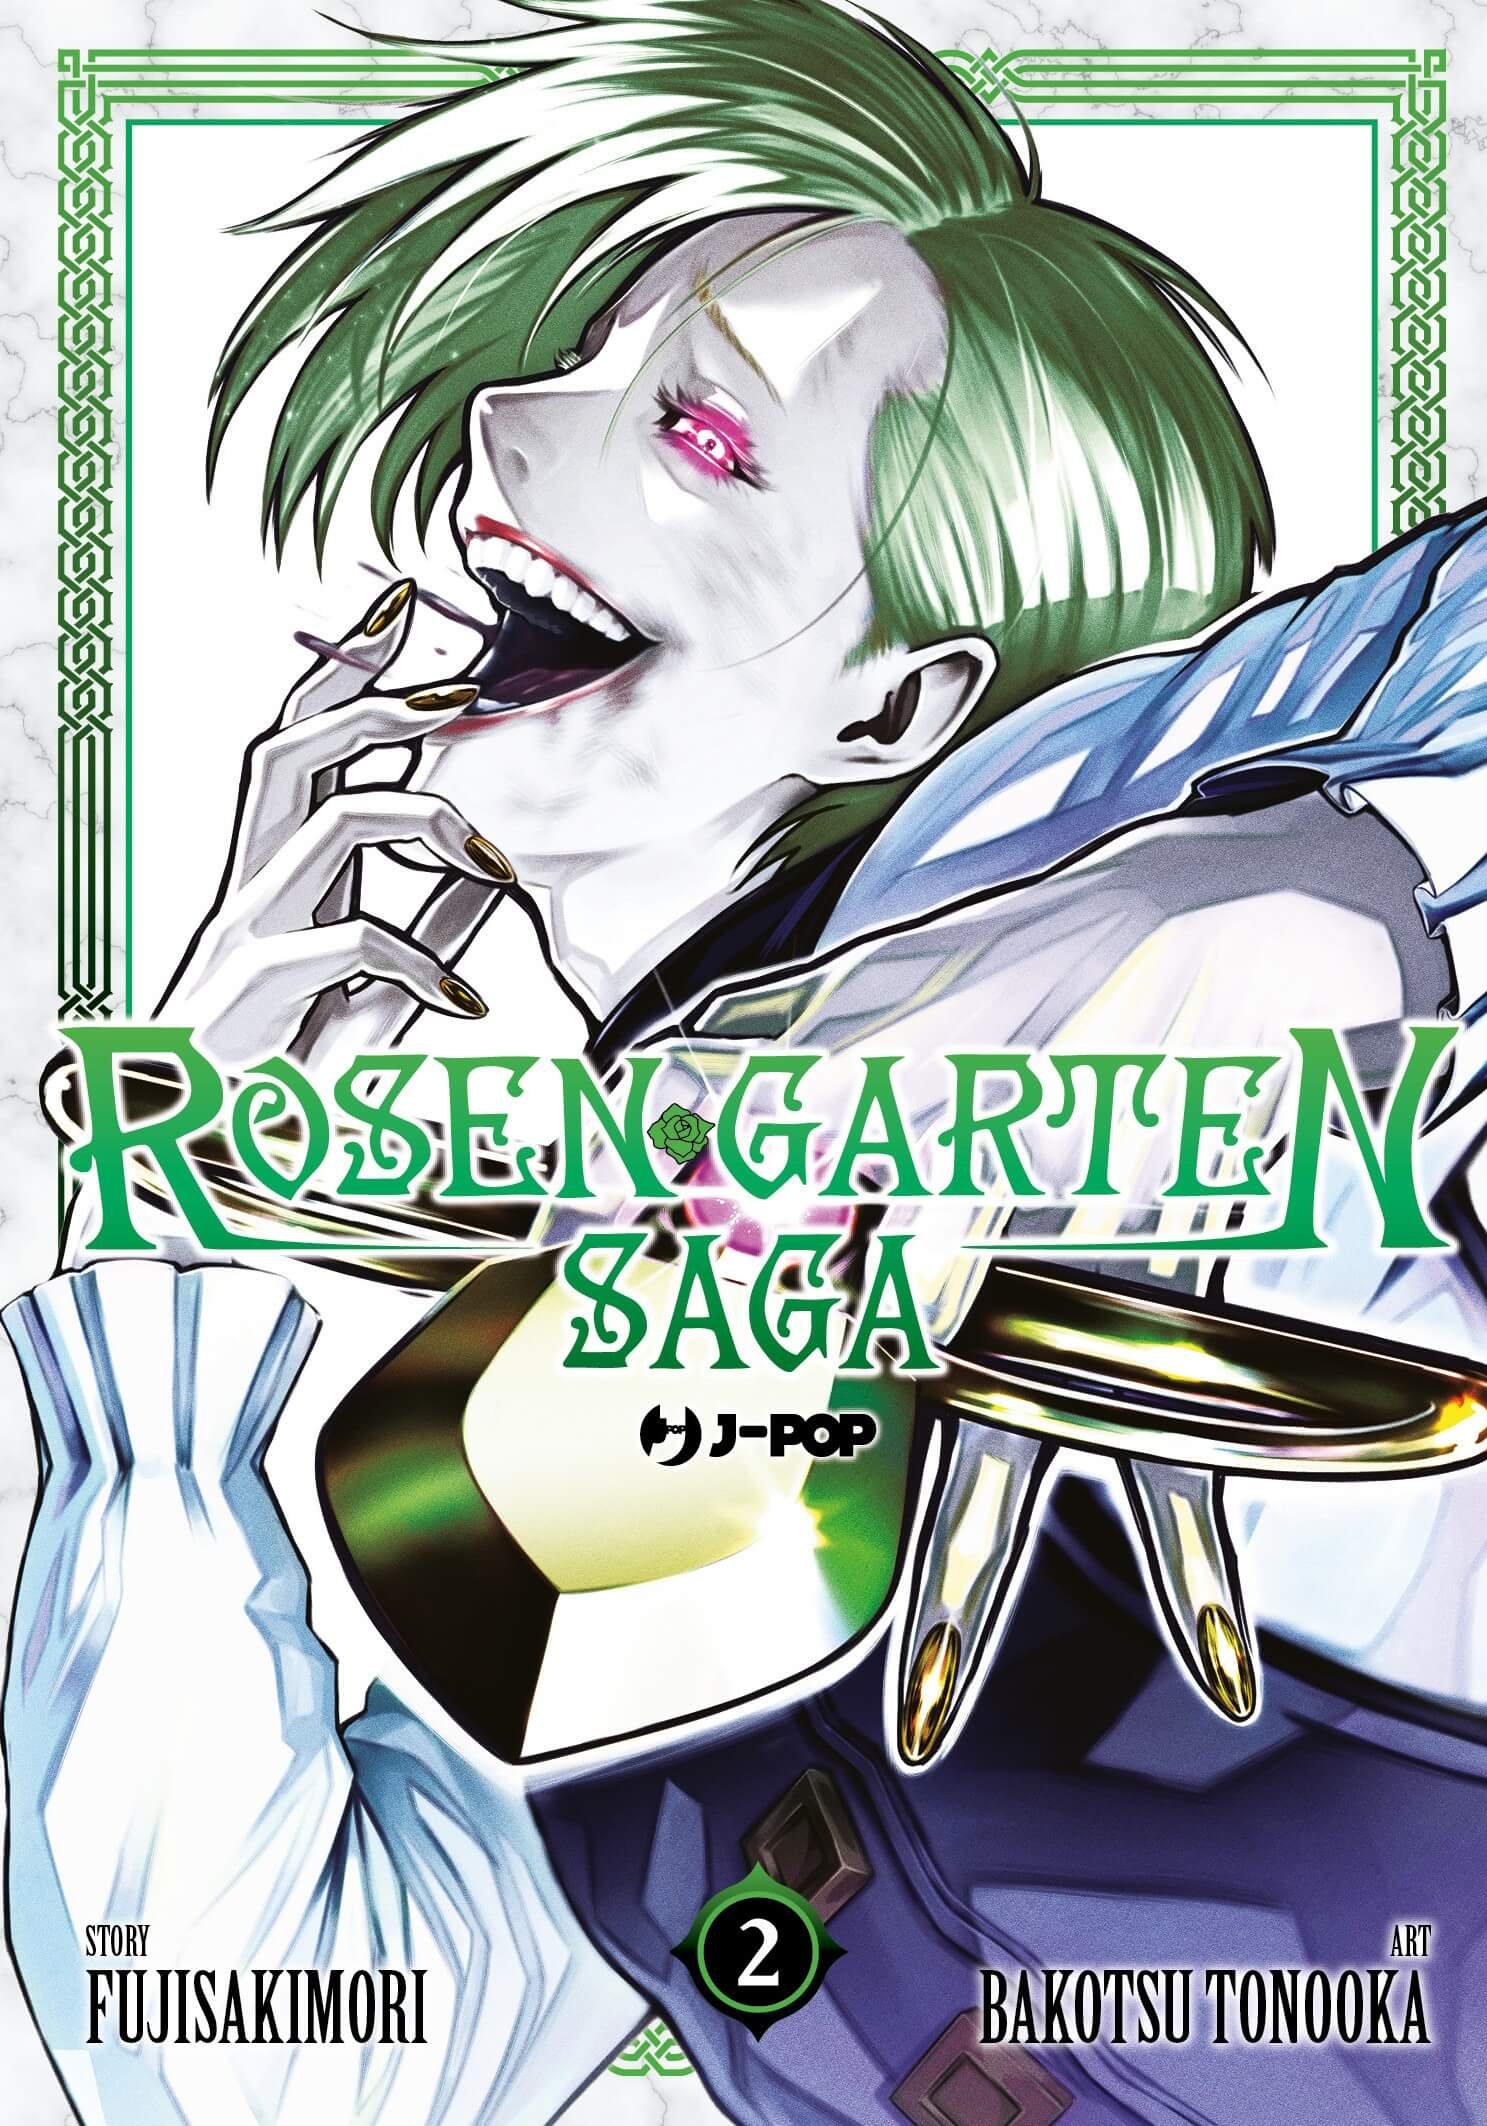 Rosen Garten Saga 2 jkt (1)